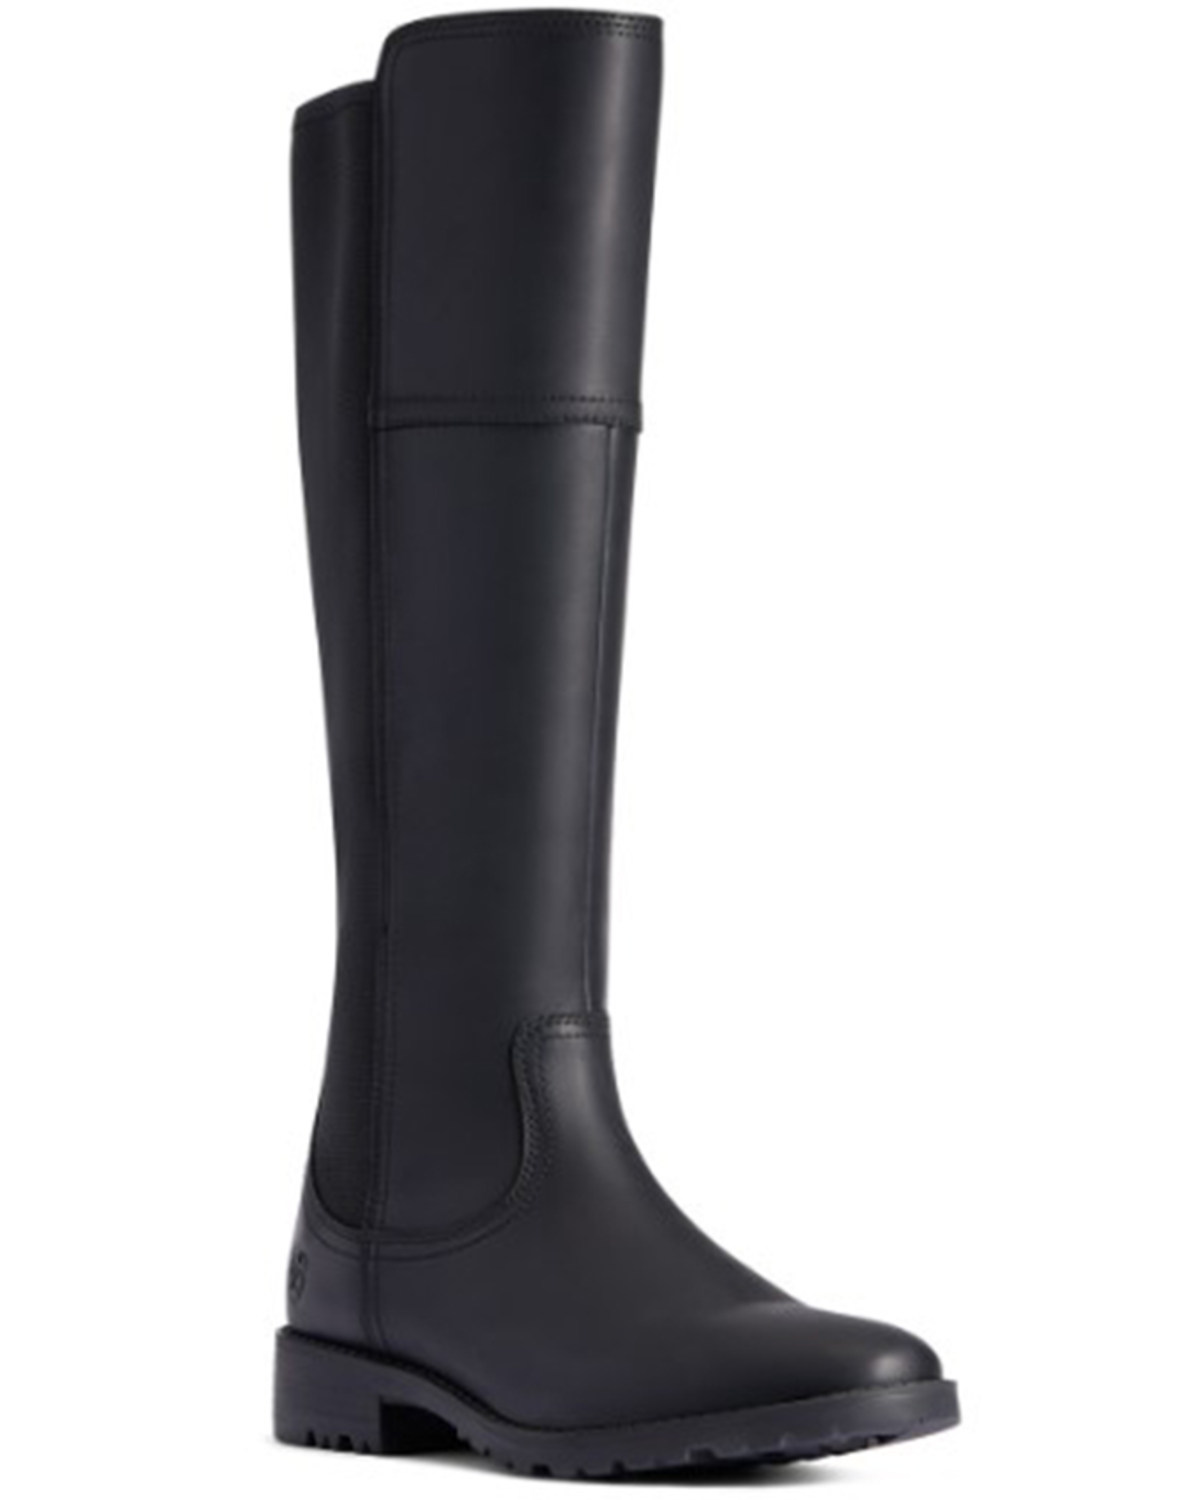 Ariat Women's Sutton II Waterproof Work Boots - Round Toe